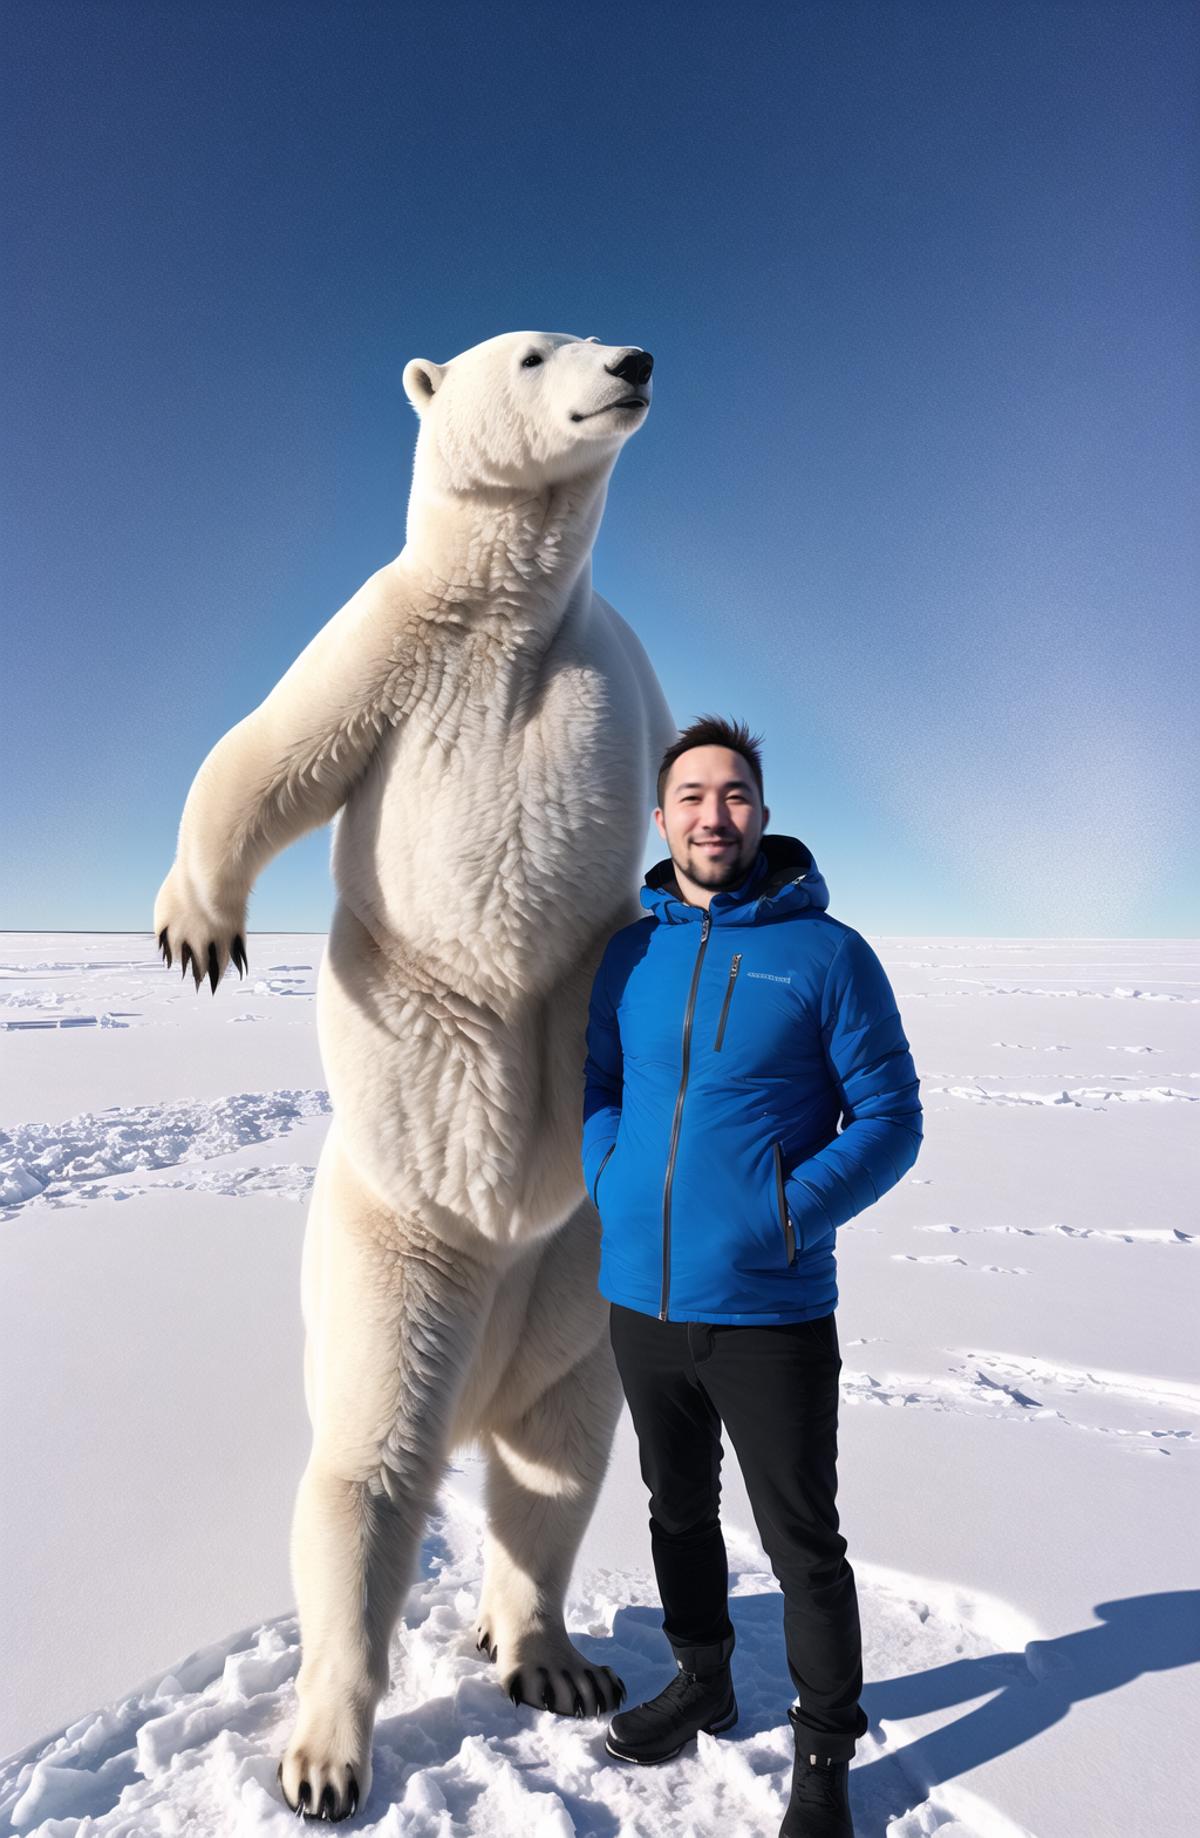 A man standing next to a giant stuffed polar bear.